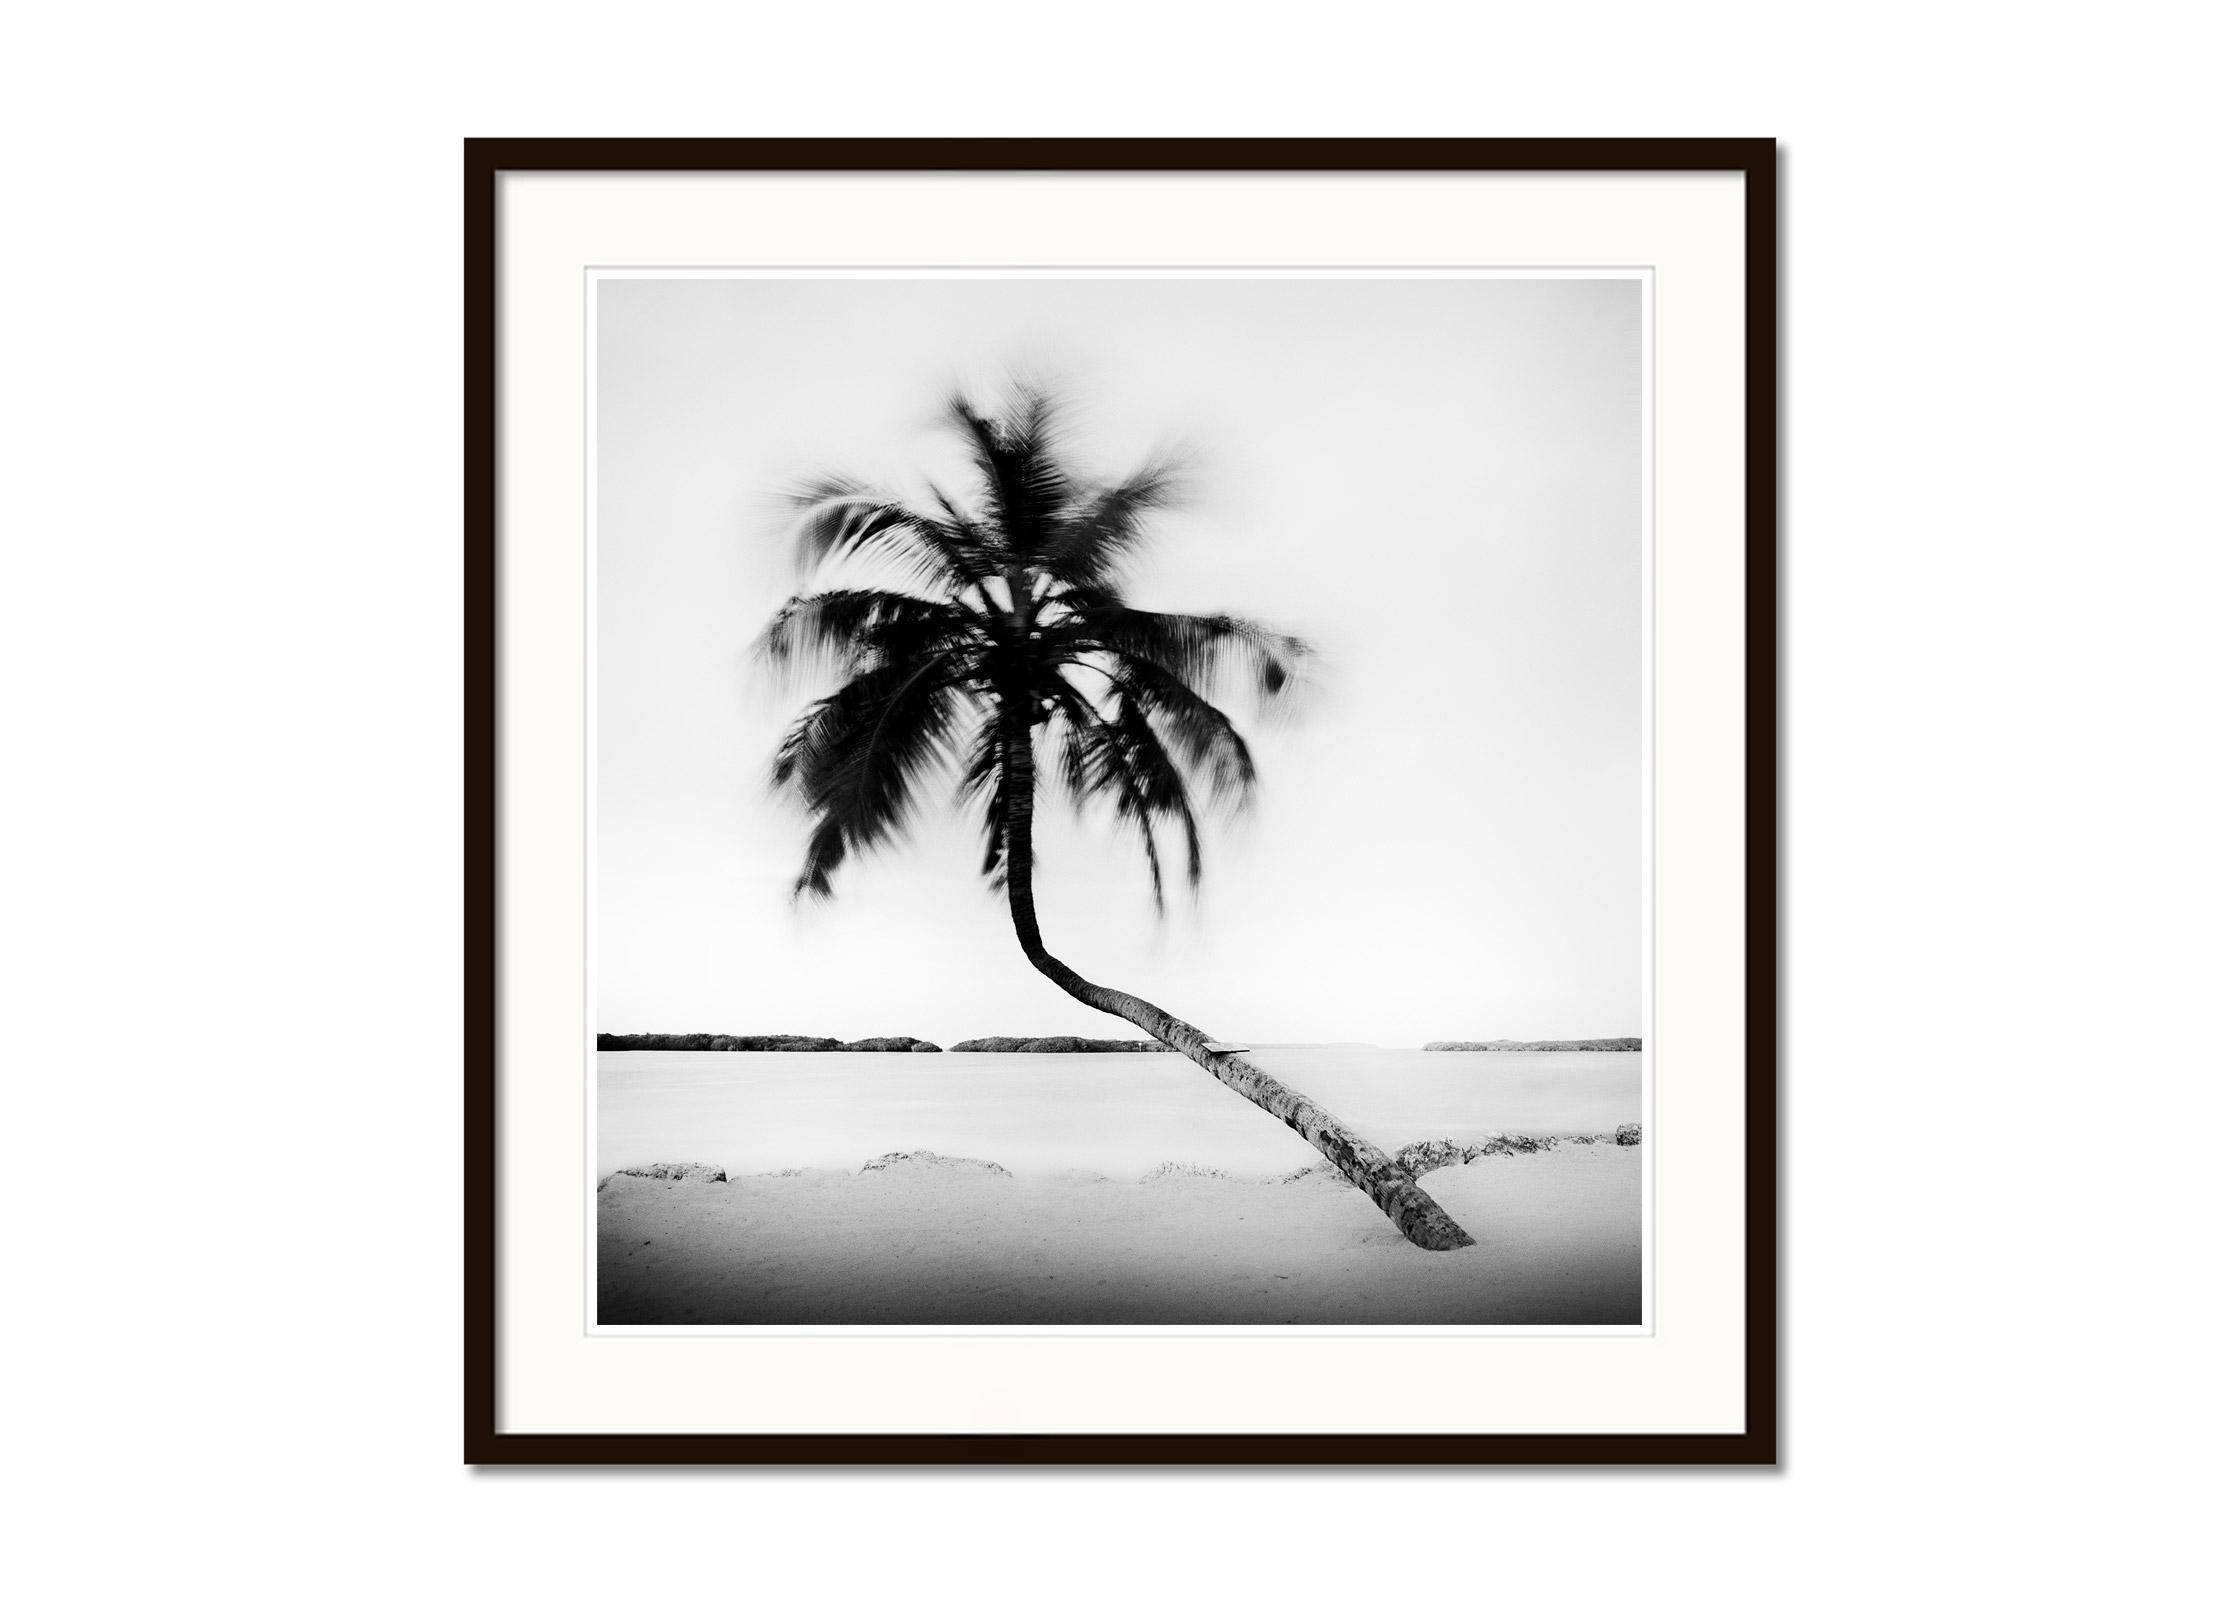 Bent Palm, Beach, Florida, USA, Schwarz-Weiß-Fotografie, Landschaft (Grau), Black and White Photograph, von Gerald Berghammer, Ina Forstinger